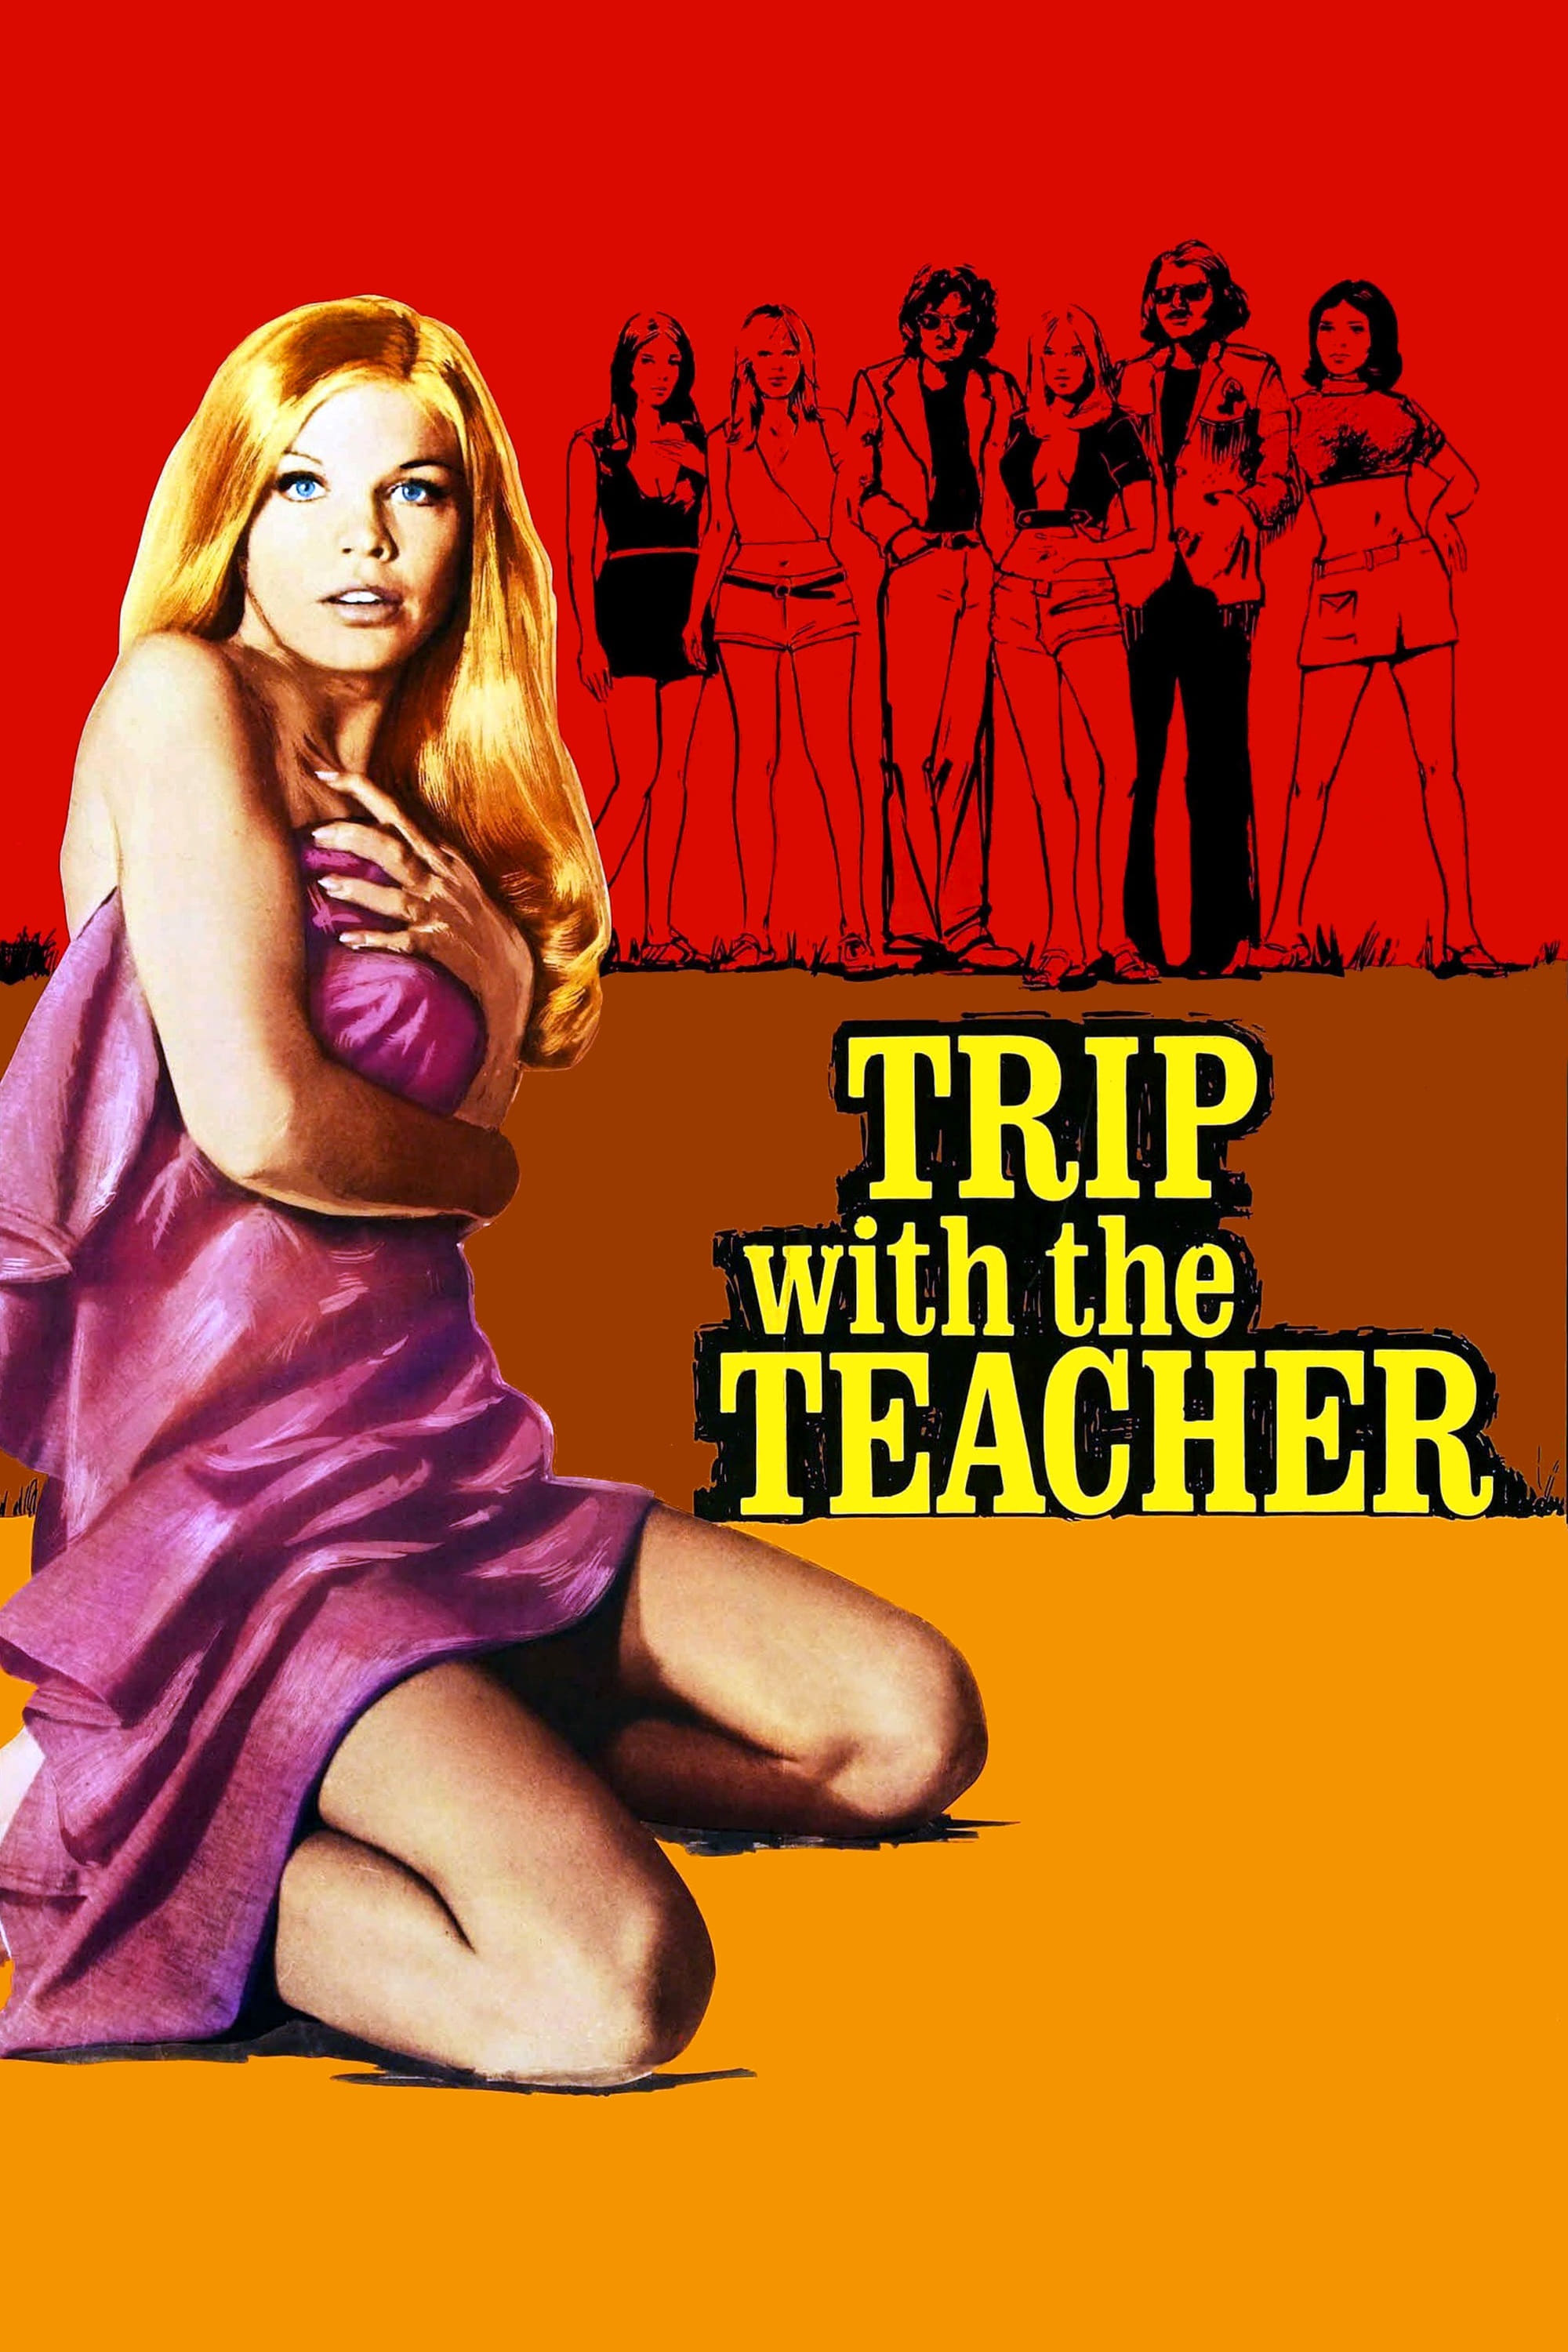 Trip with the Teacher (1975)